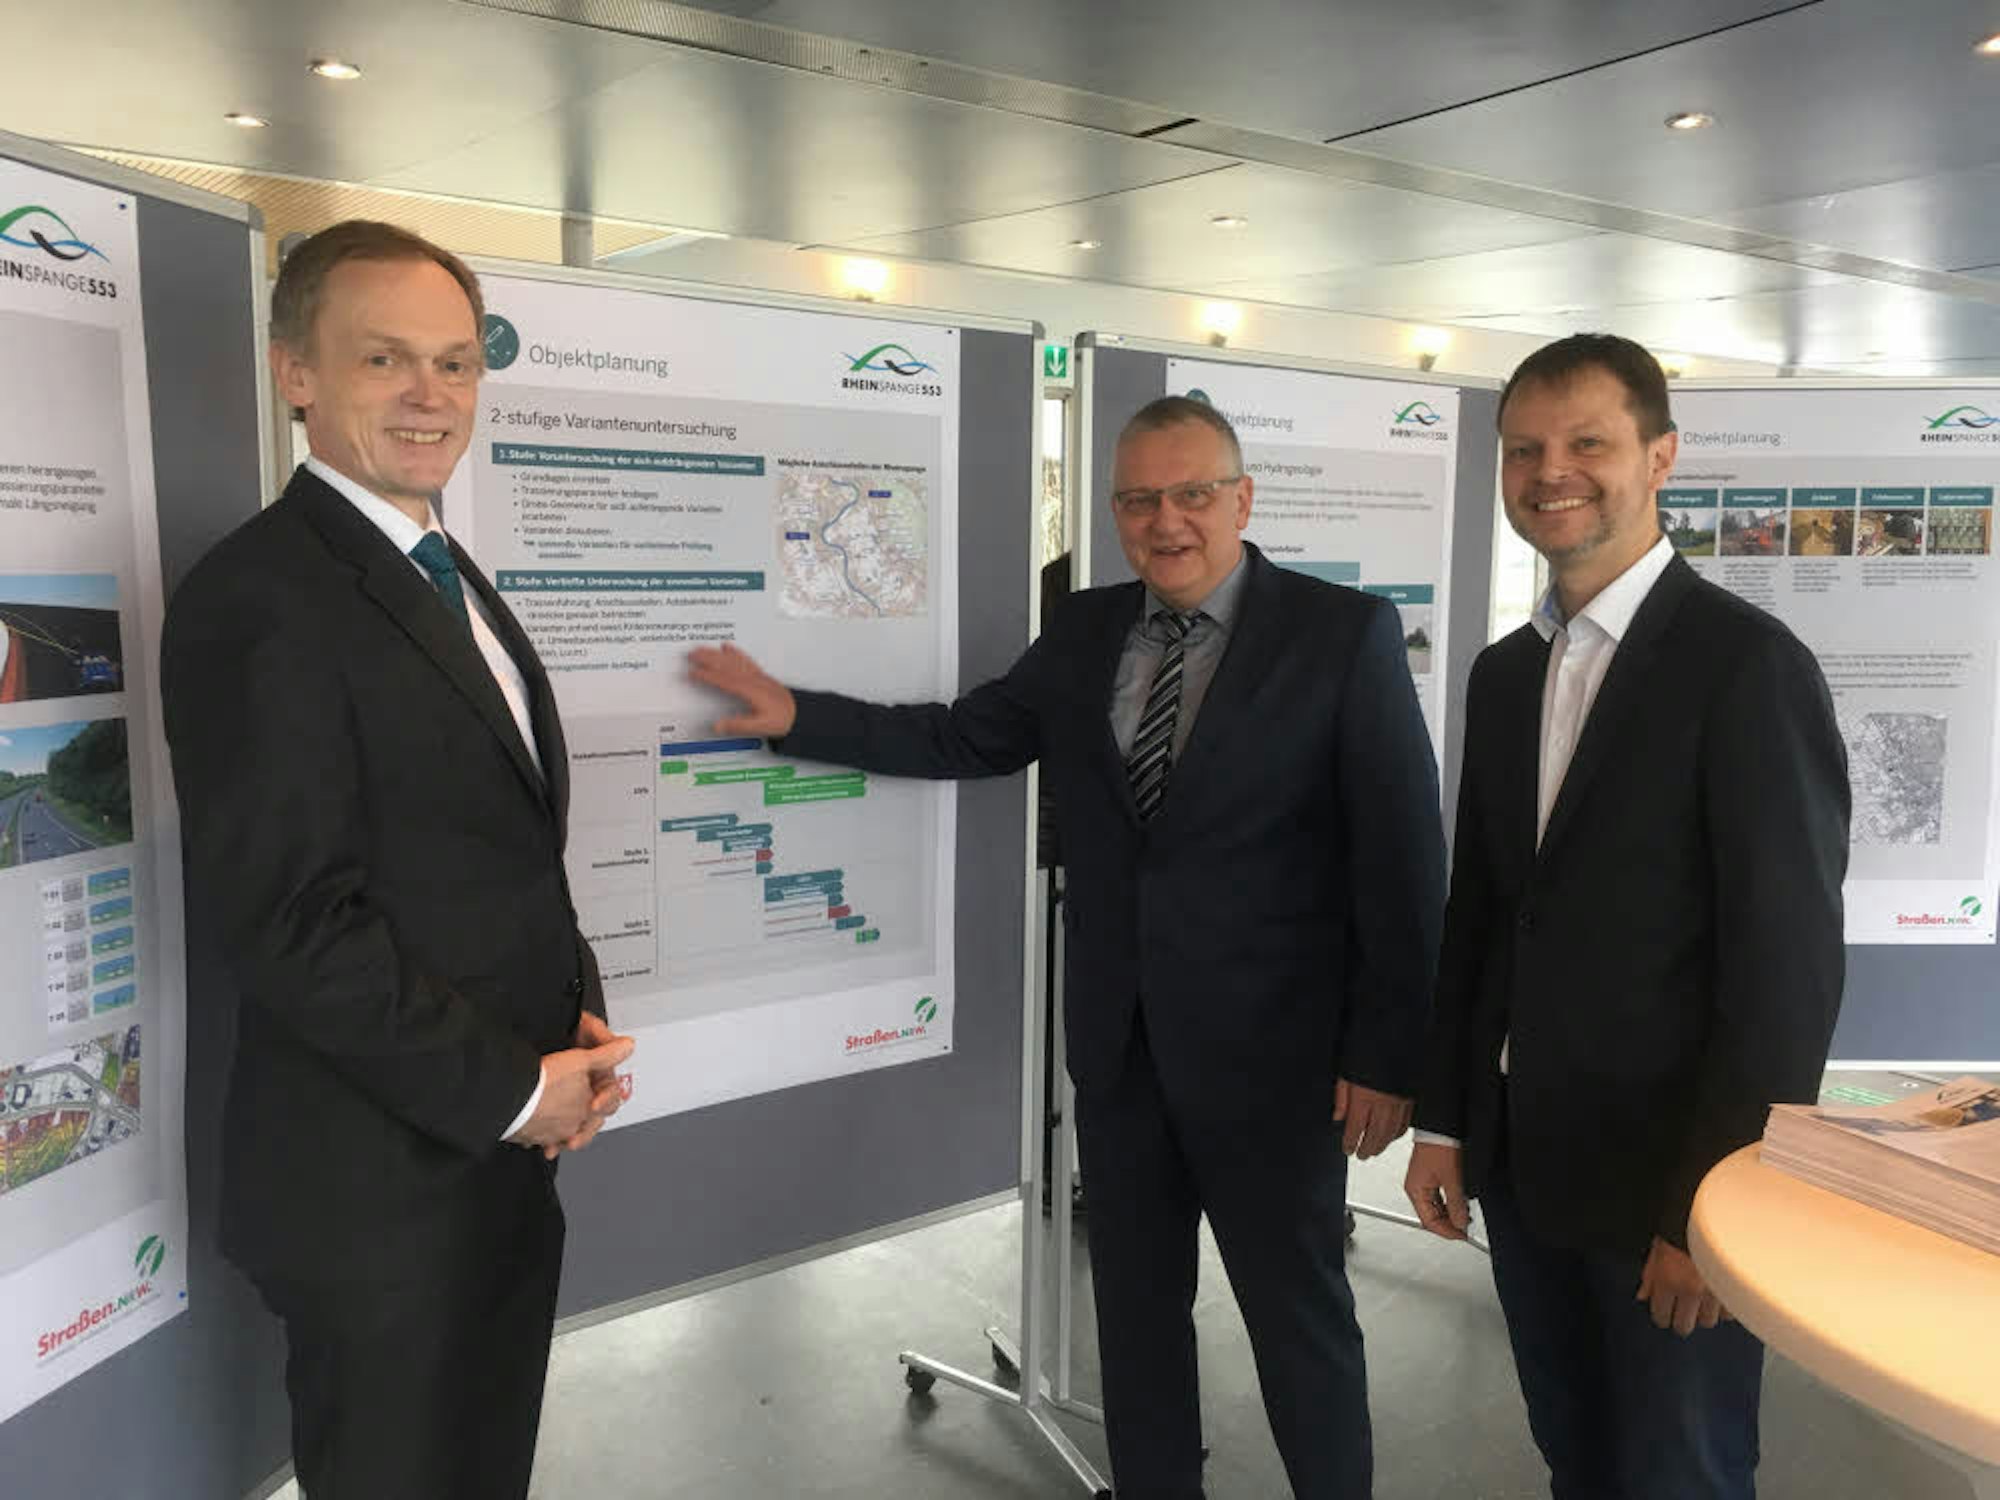 Staatssekretär Hendrik Schulte, Regionaldirektor Thomas Ganz und Abteilungsleiter Willi Kolks (v.l.) beim Informationsmarkt zur Rheinspangen-Planung.